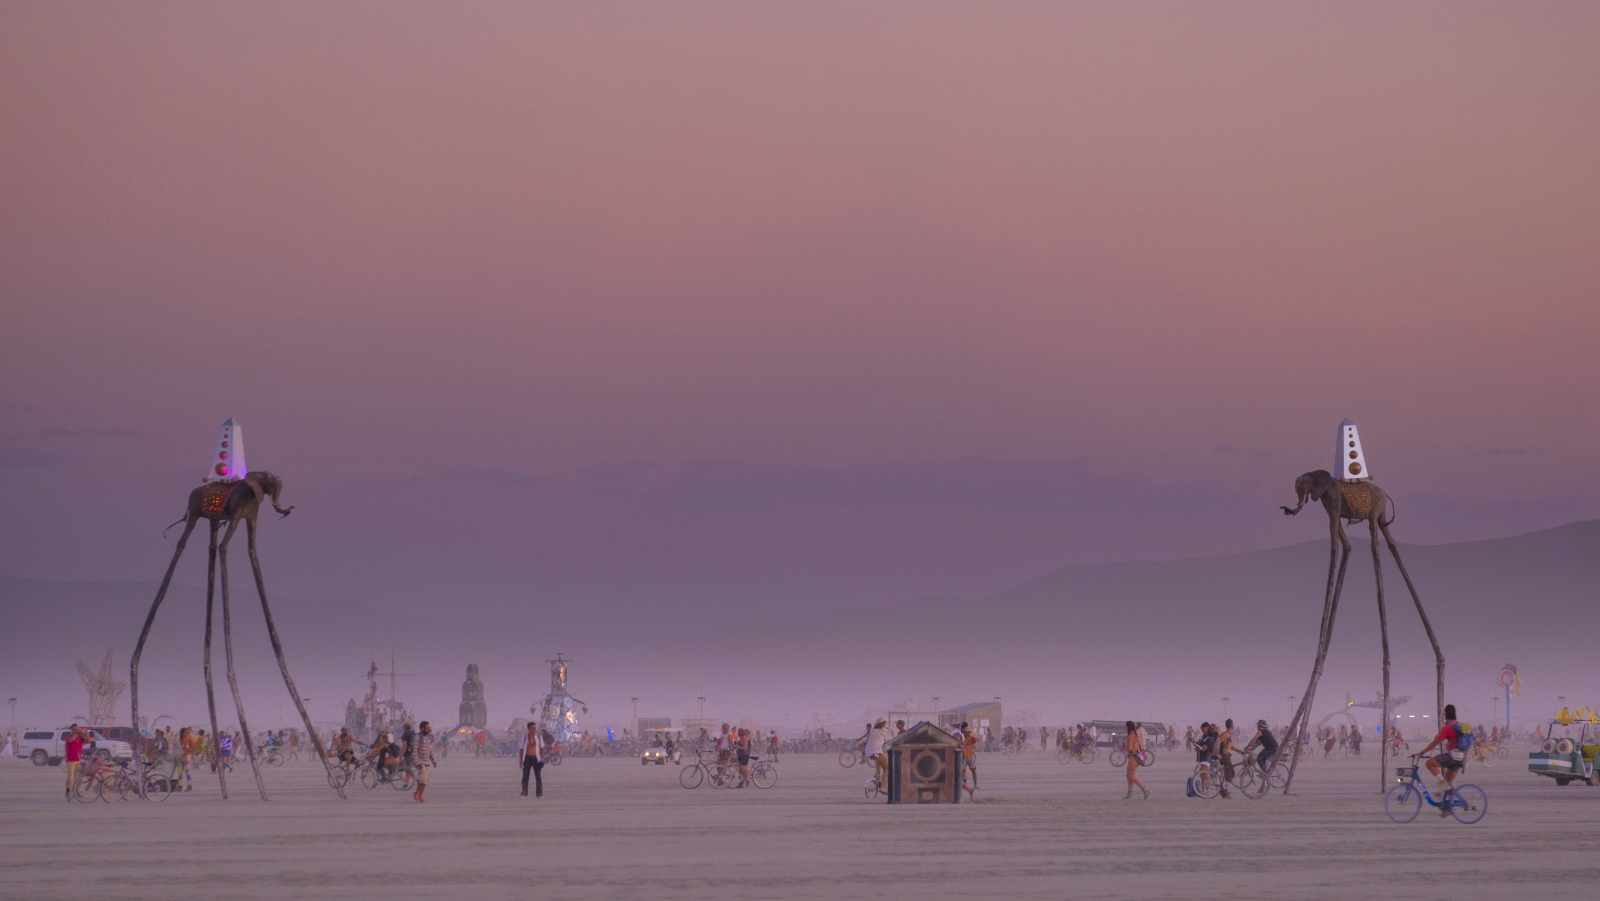 Kako izgleda festival Burning man pogledajte na izložbi fotografija u Botaničaru